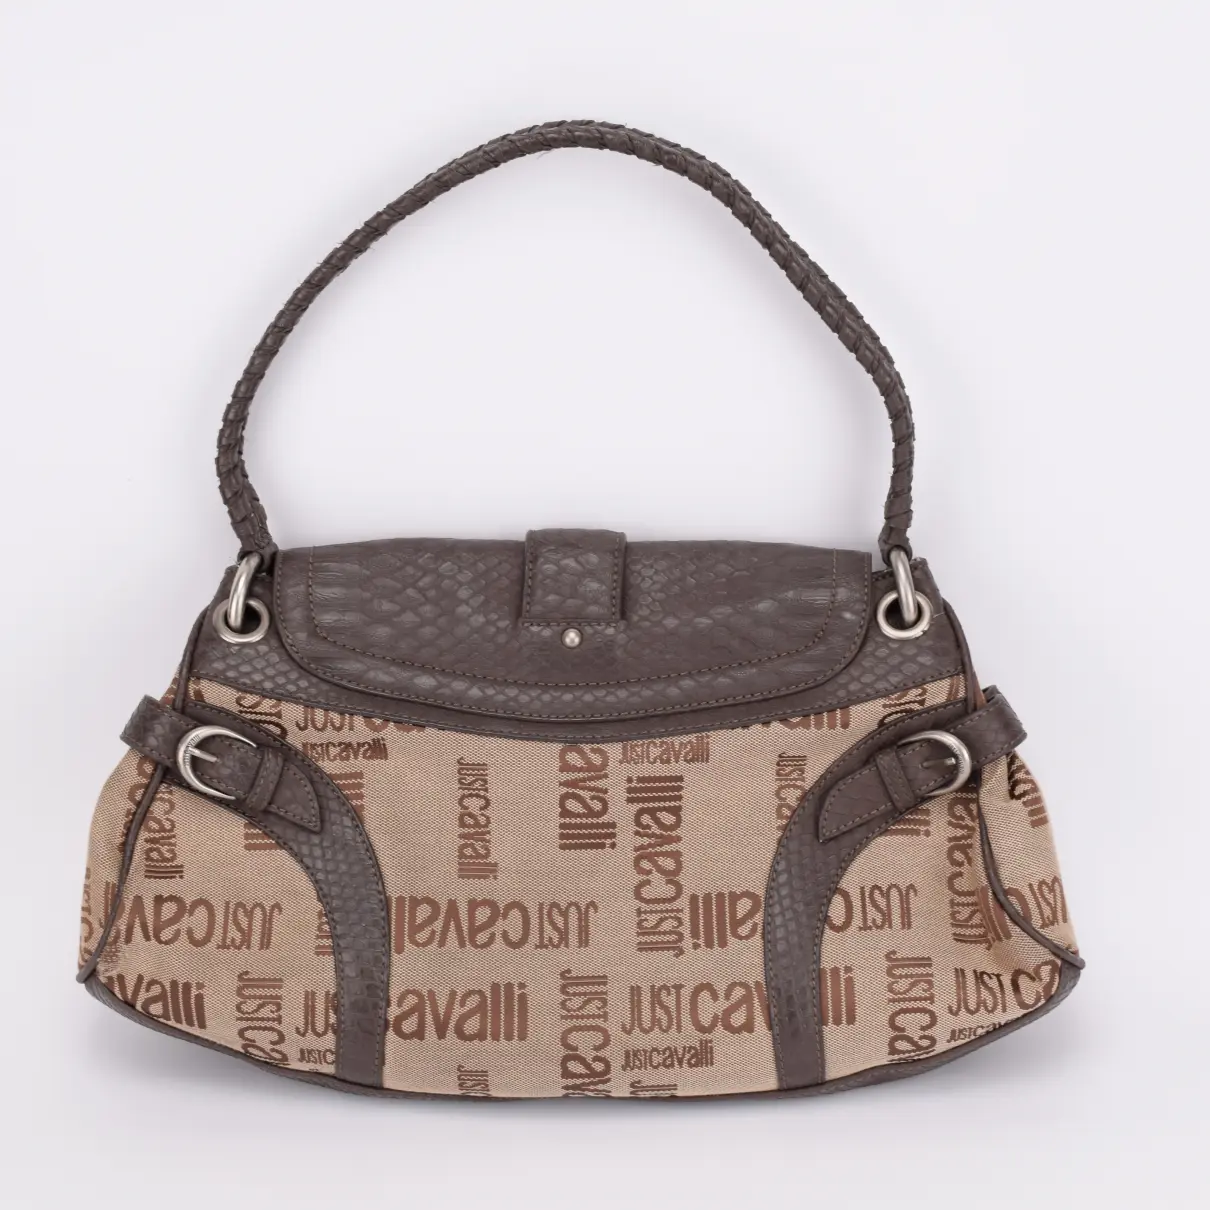 Buy Just Cavalli Cloth handbag online